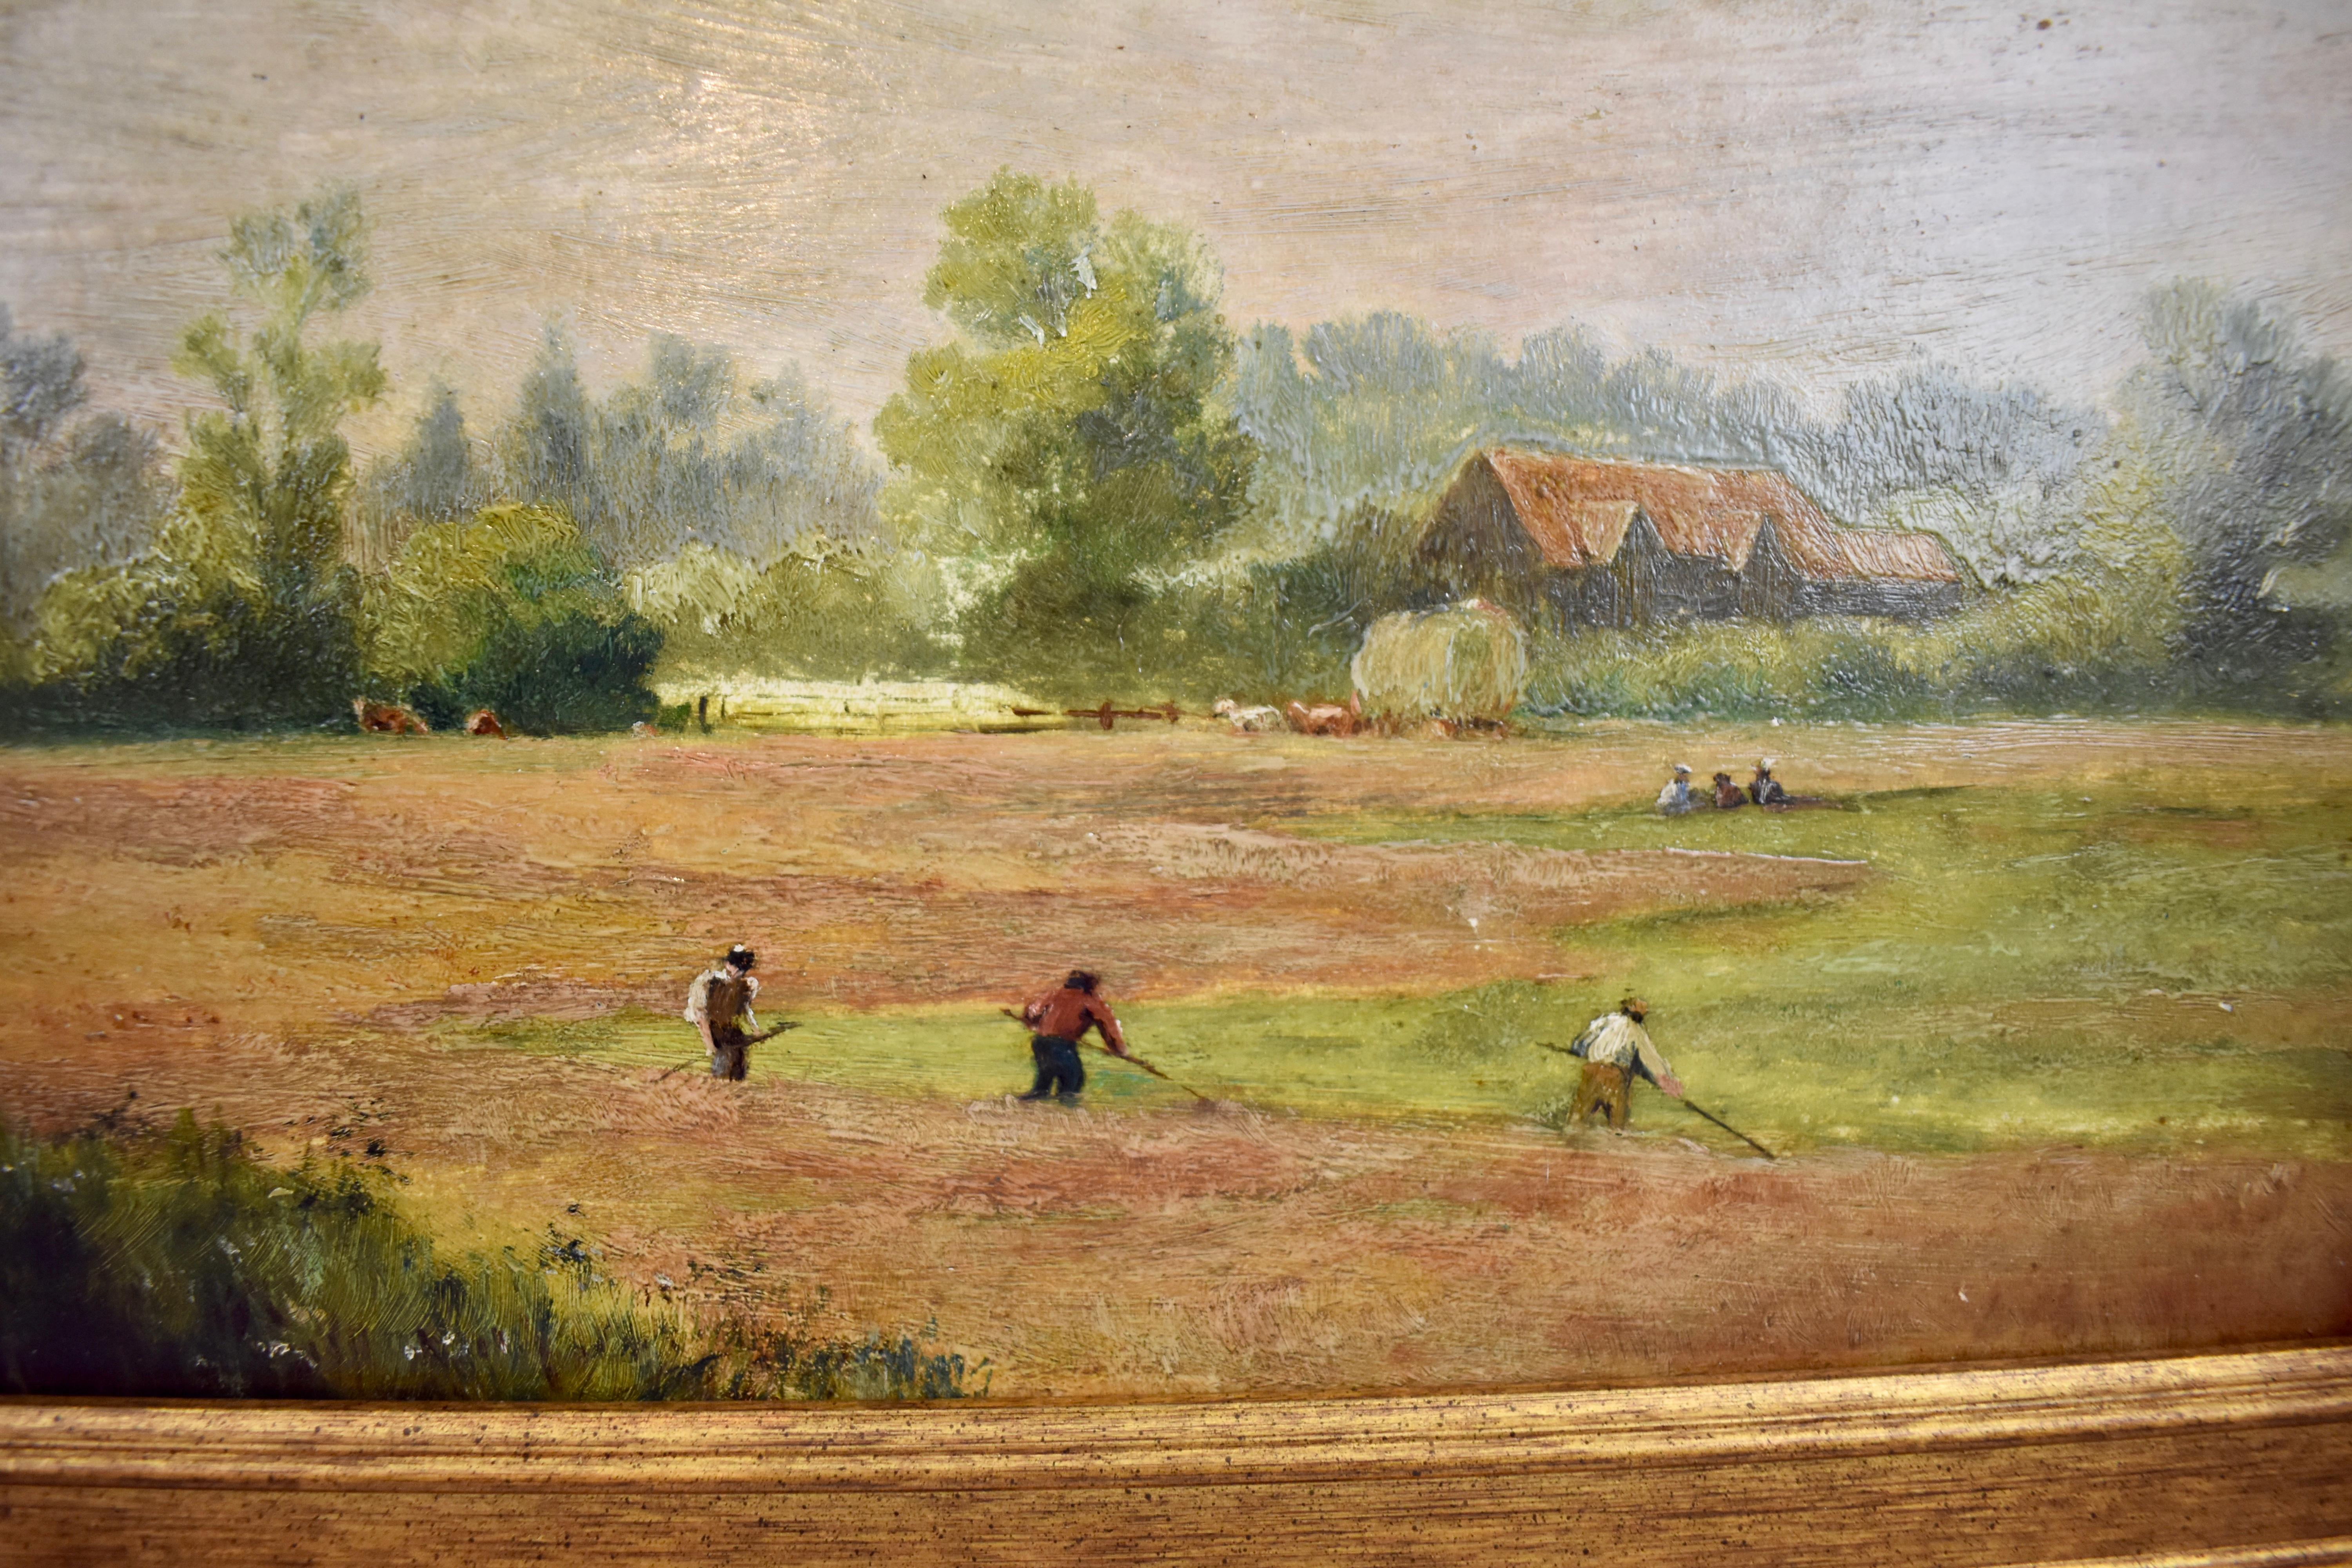 Peinture du début du 19e siècle, huile sur lin, représentant une scène de ferme pastorale anglaise, artiste inconnu.

Le premier plan à droite montre trois ouvriers agricoles en train de défricher une prairie. D'autres personnages sont visibles au